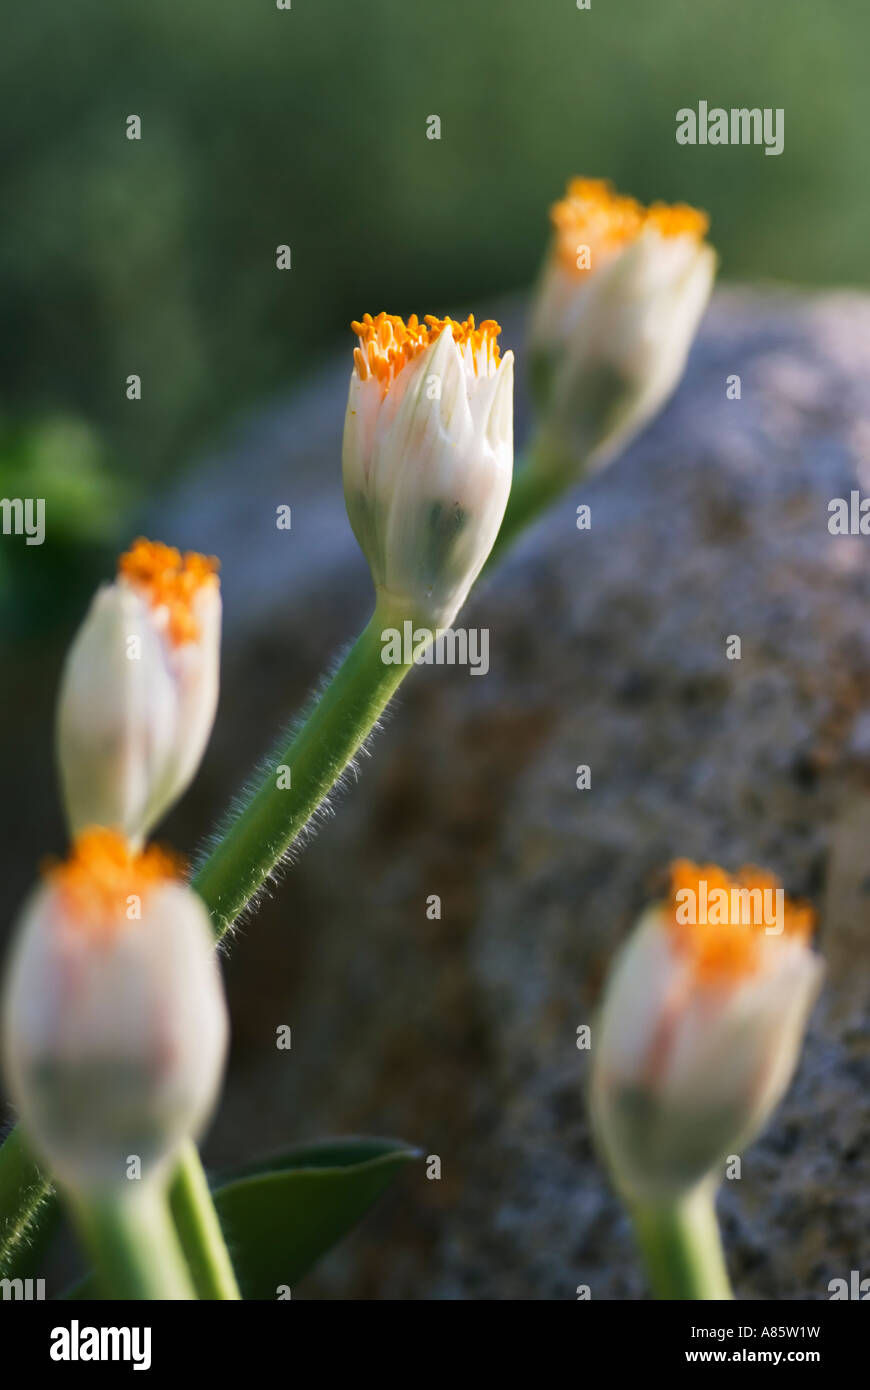 Eine Nahaufnahme von Haemanthus Pflanzen - Trivialnamen Blut Lily, Pinsel oder Fackel Lilie. Stockfoto